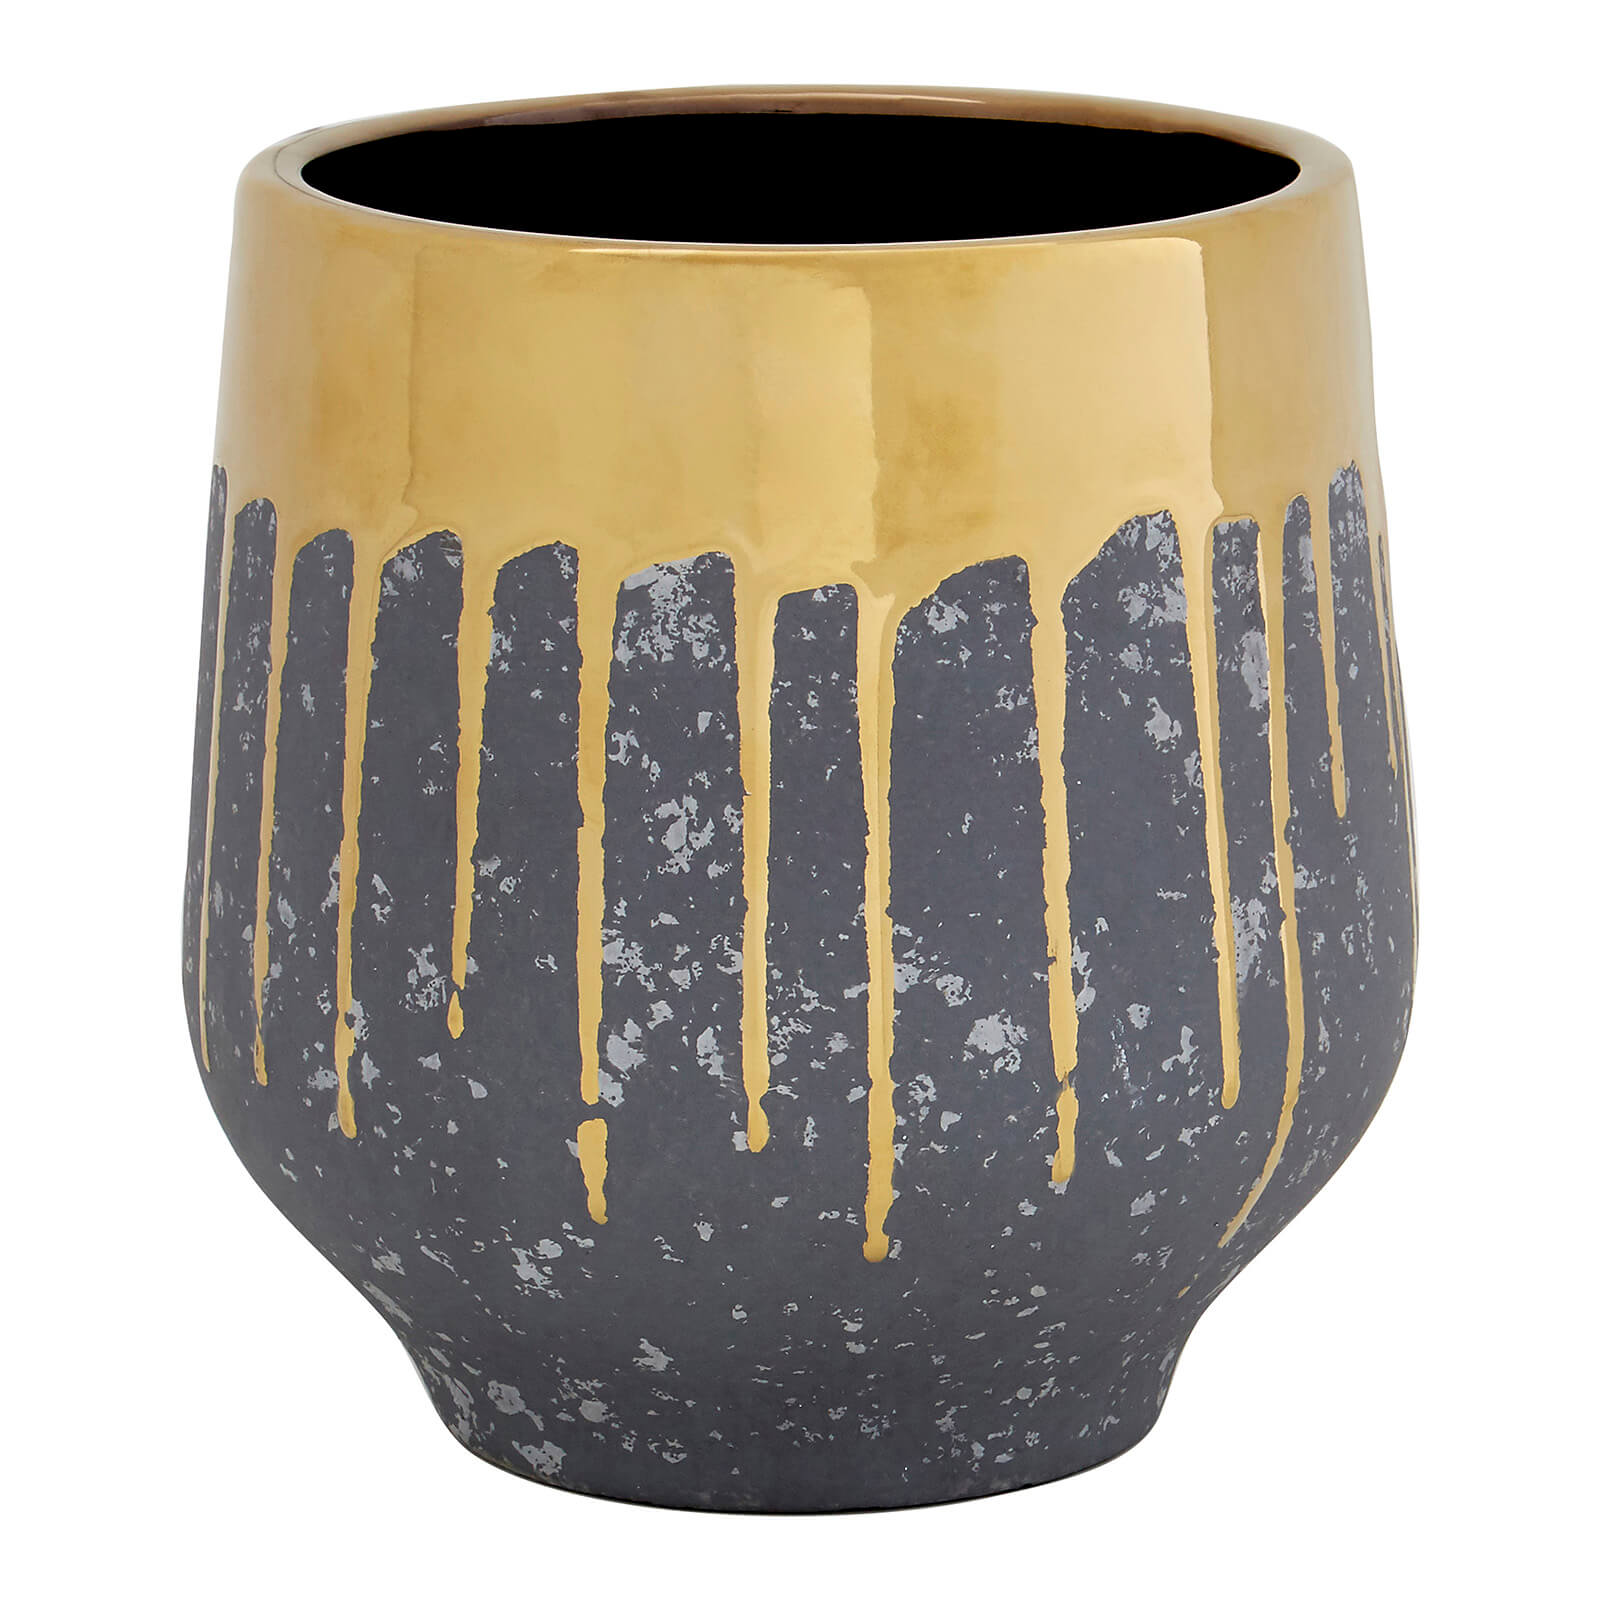 Image of Cryus Ceramic Planter - Grey & Gold - Large